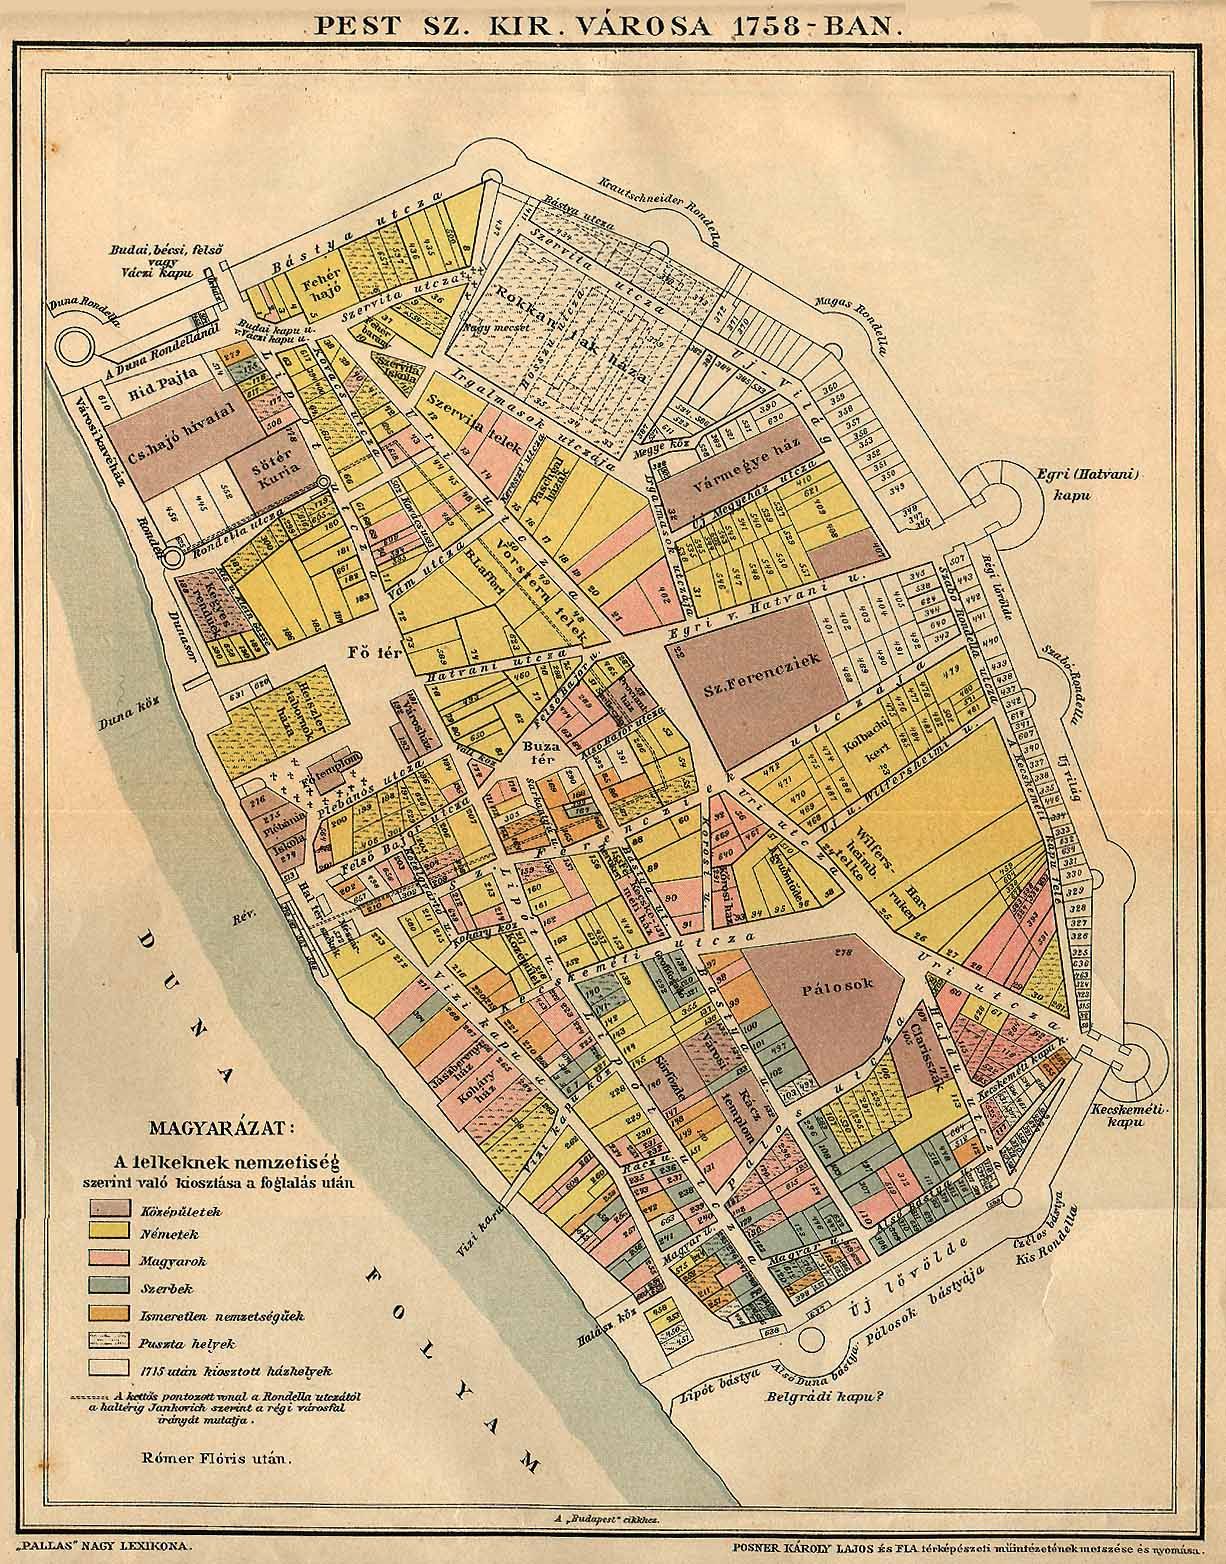 budapest mátyásföld térkép Pest 1758 as térképe. Na melyik utca neve nem változott azóta  budapest mátyásföld térkép